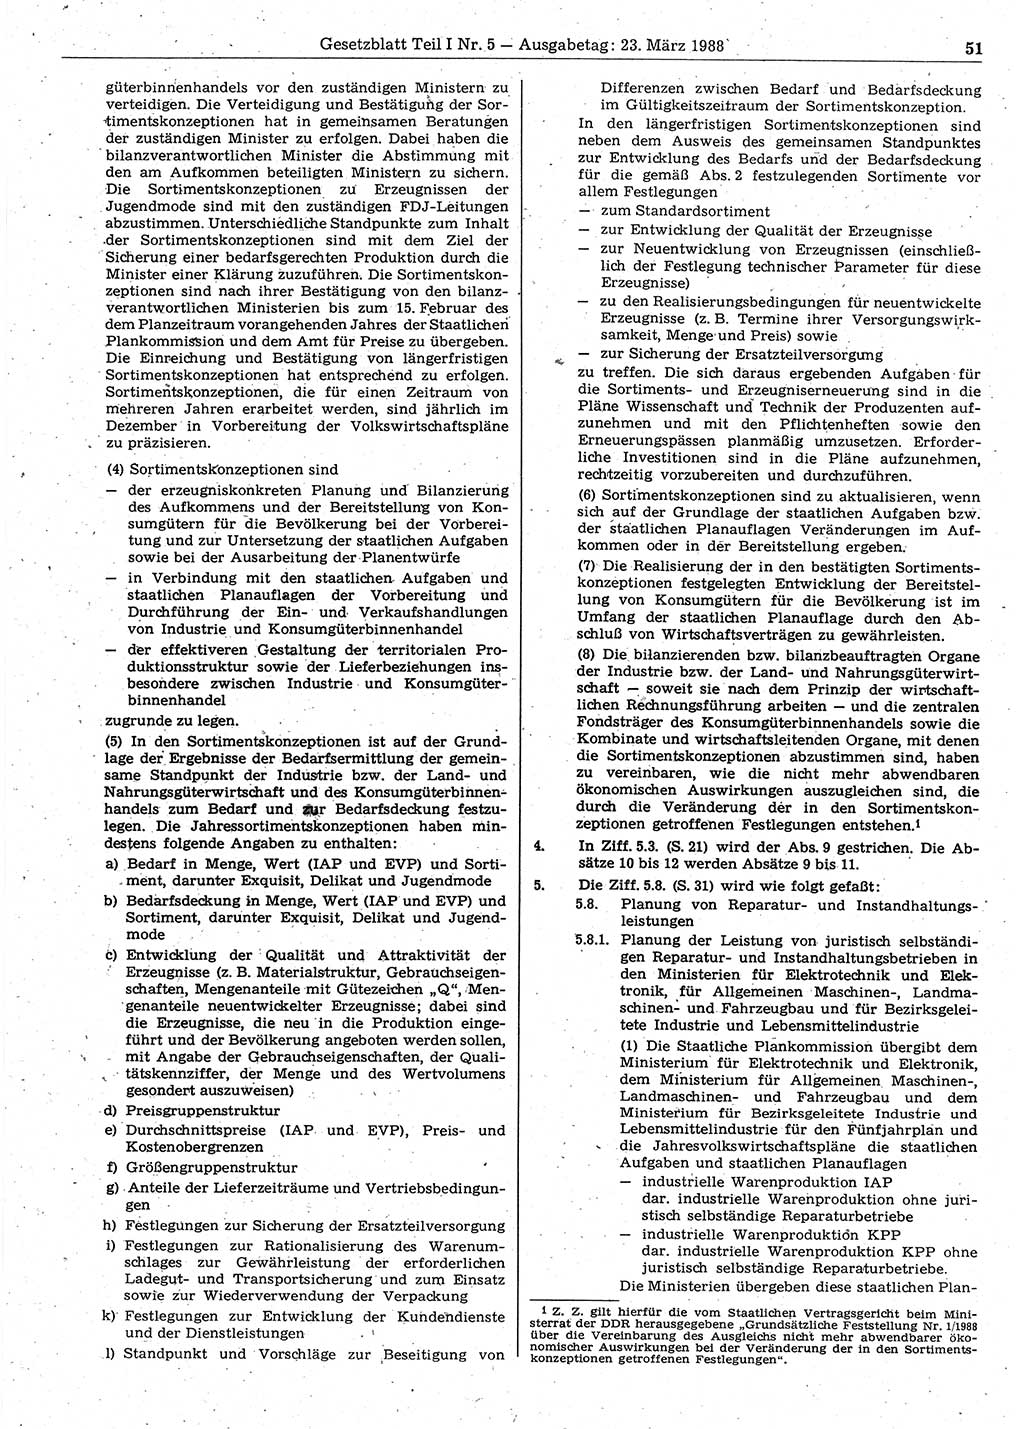 Gesetzblatt (GBl.) der Deutschen Demokratischen Republik (DDR) Teil Ⅰ 1988, Seite 51 (GBl. DDR Ⅰ 1988, S. 51)